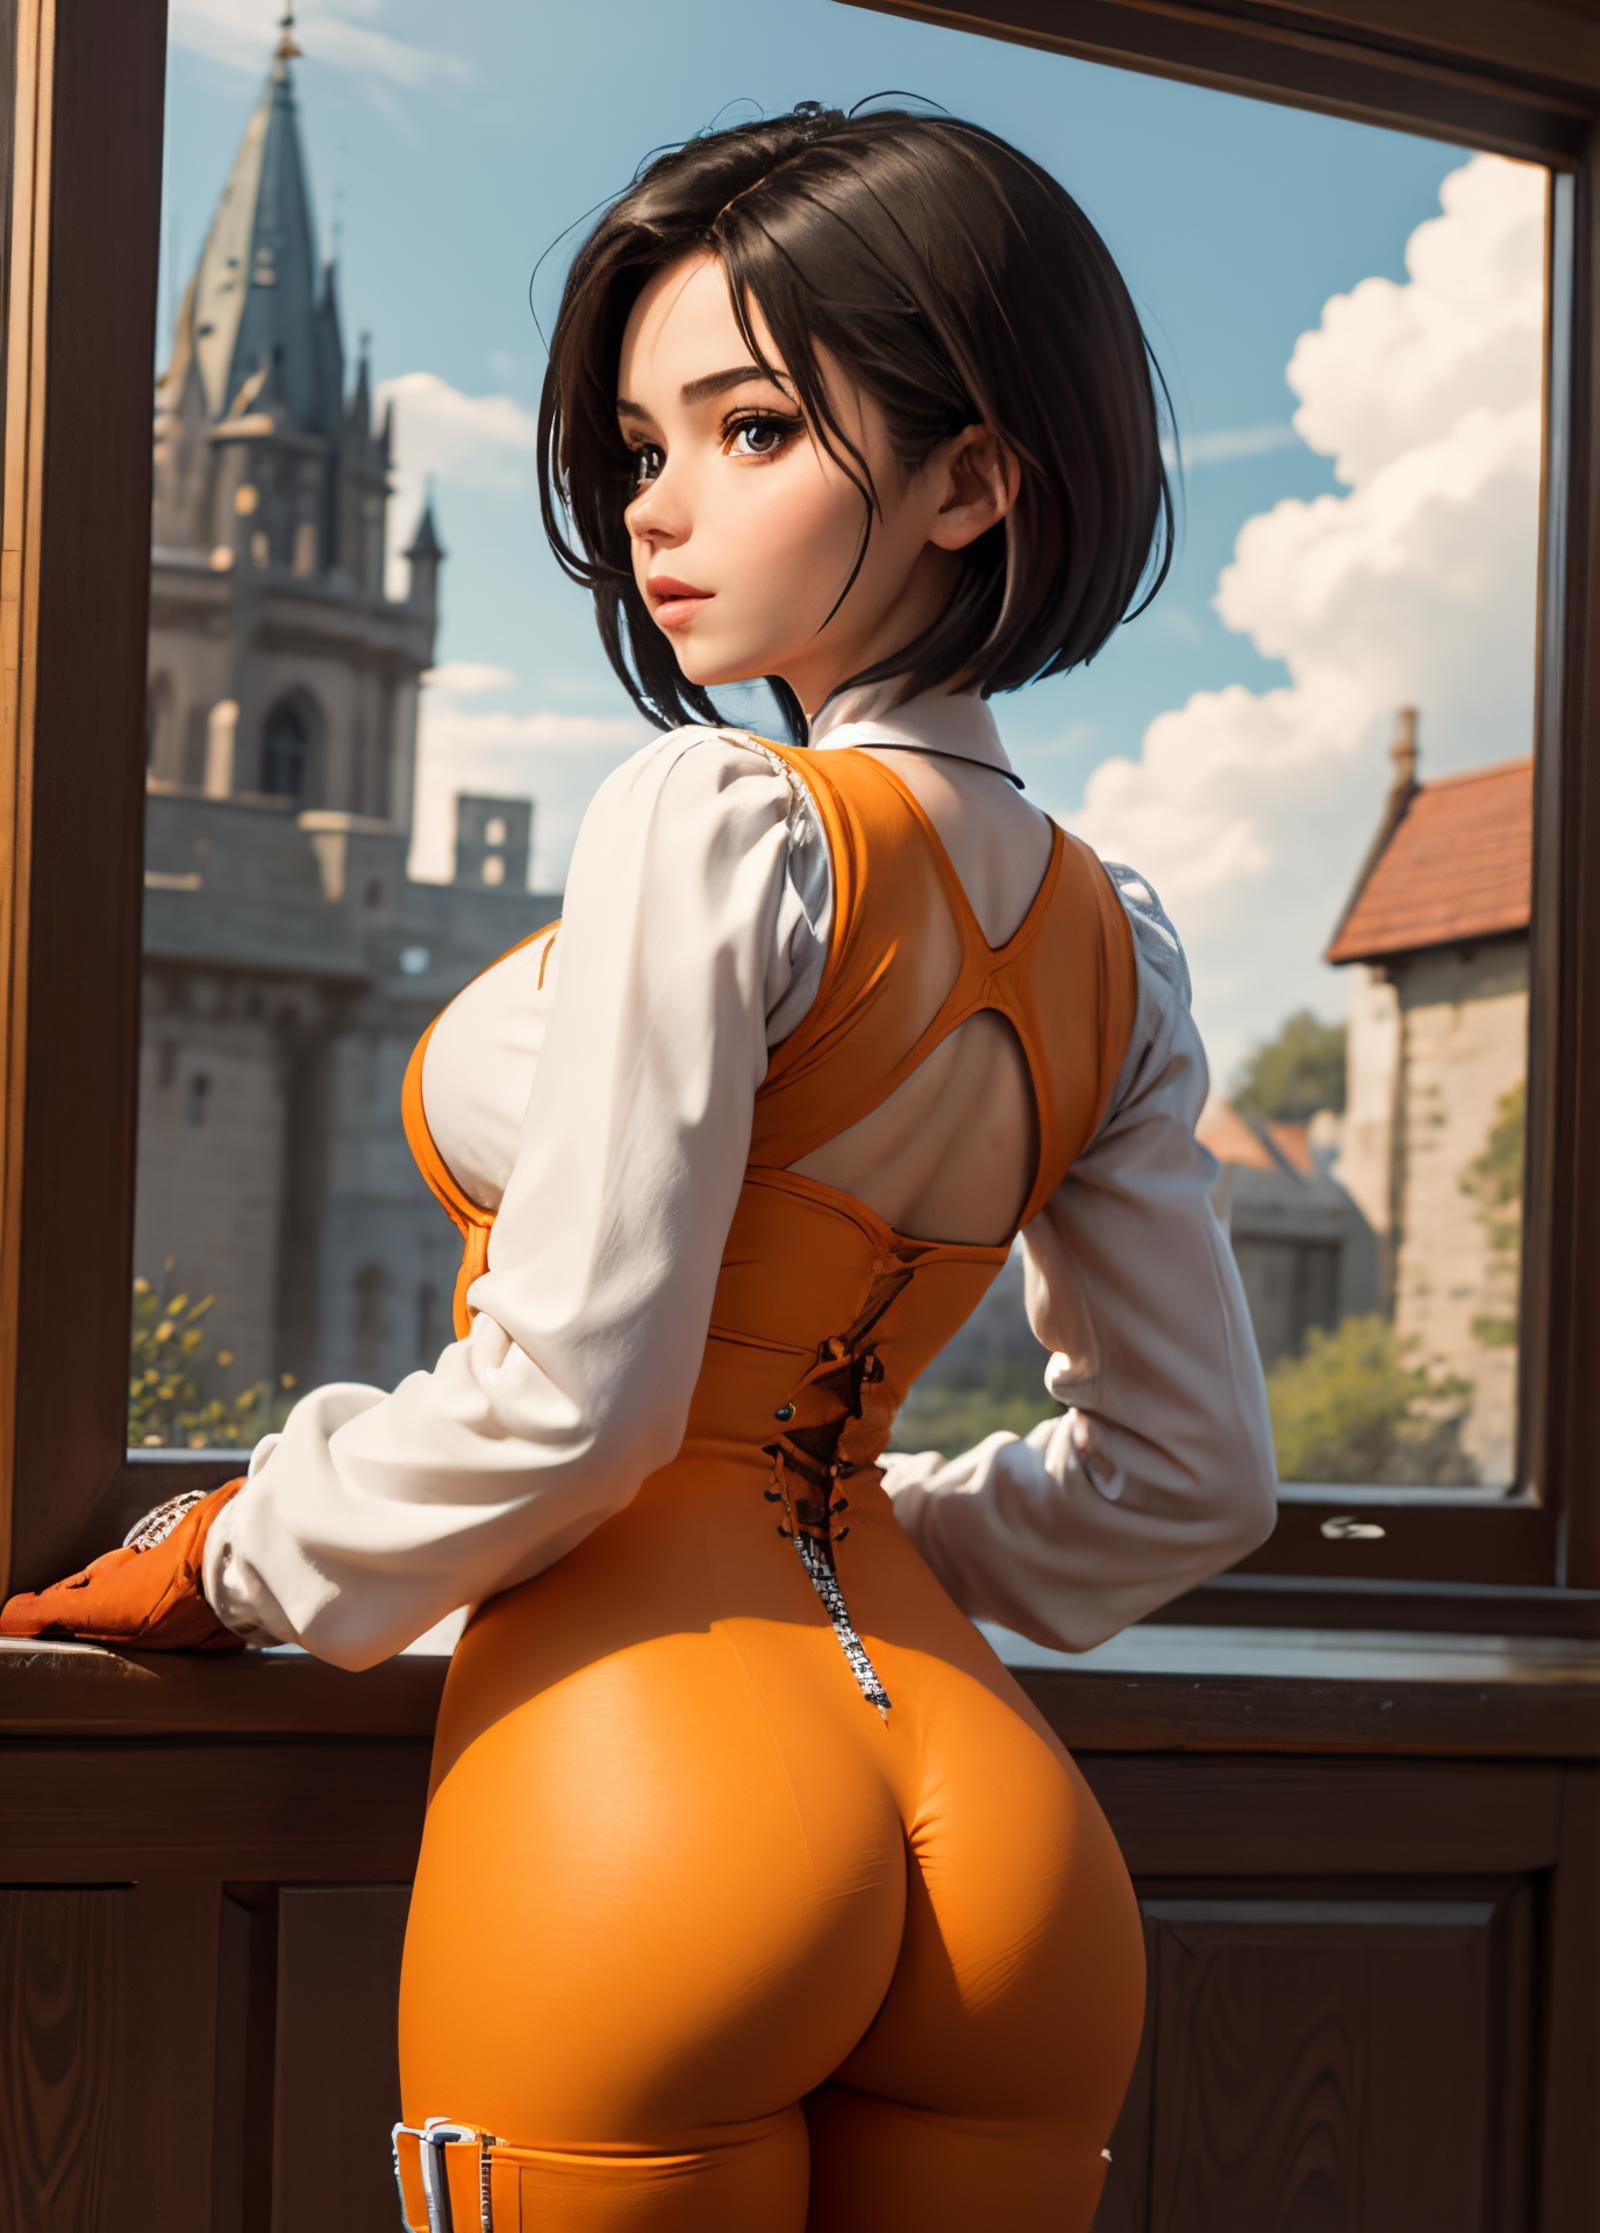 Anime woman in orange dress standing in a window.